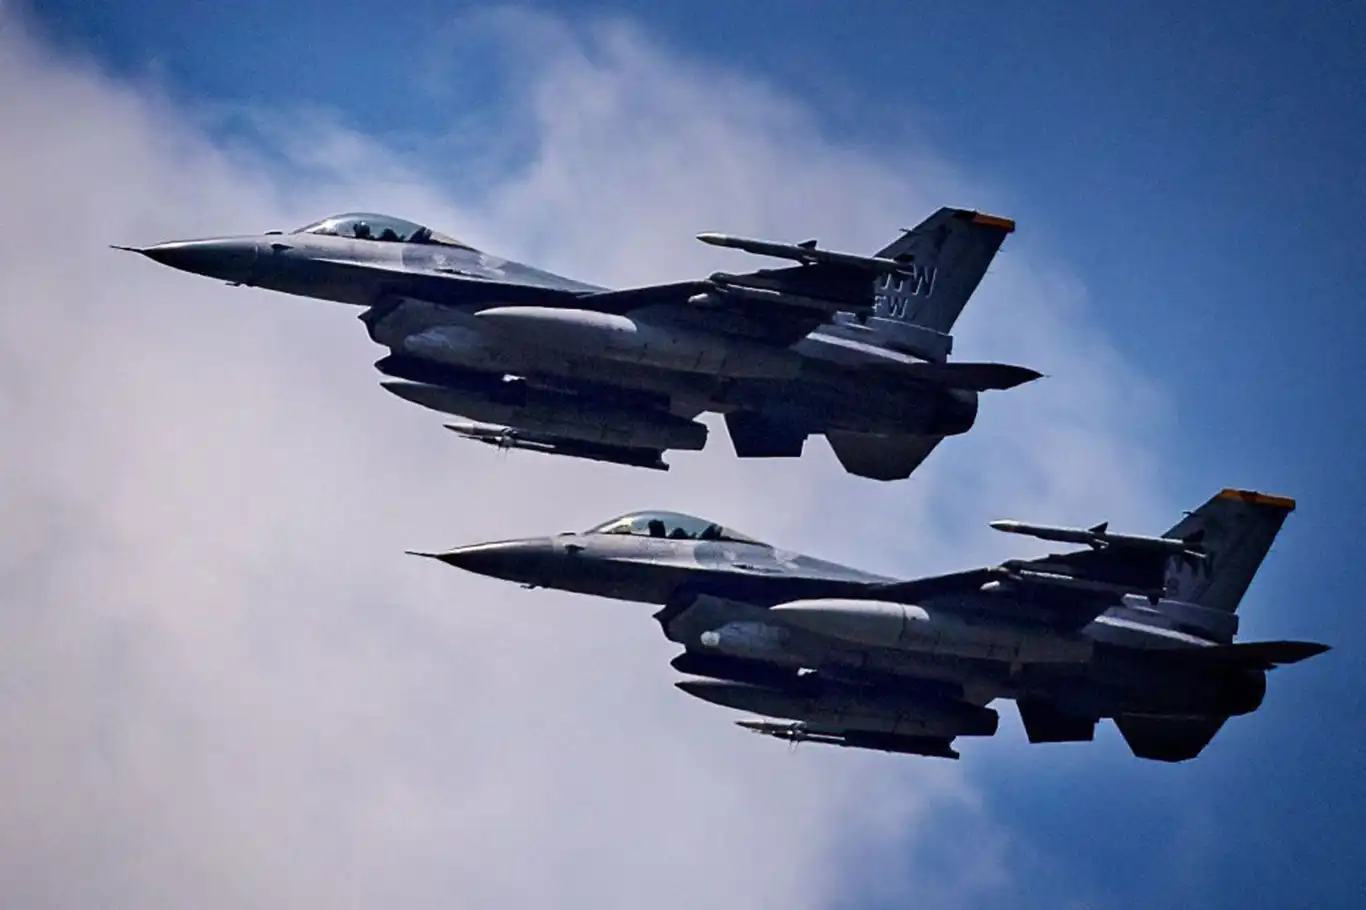 Belgium to send F-16 fighter jets to Ukraine